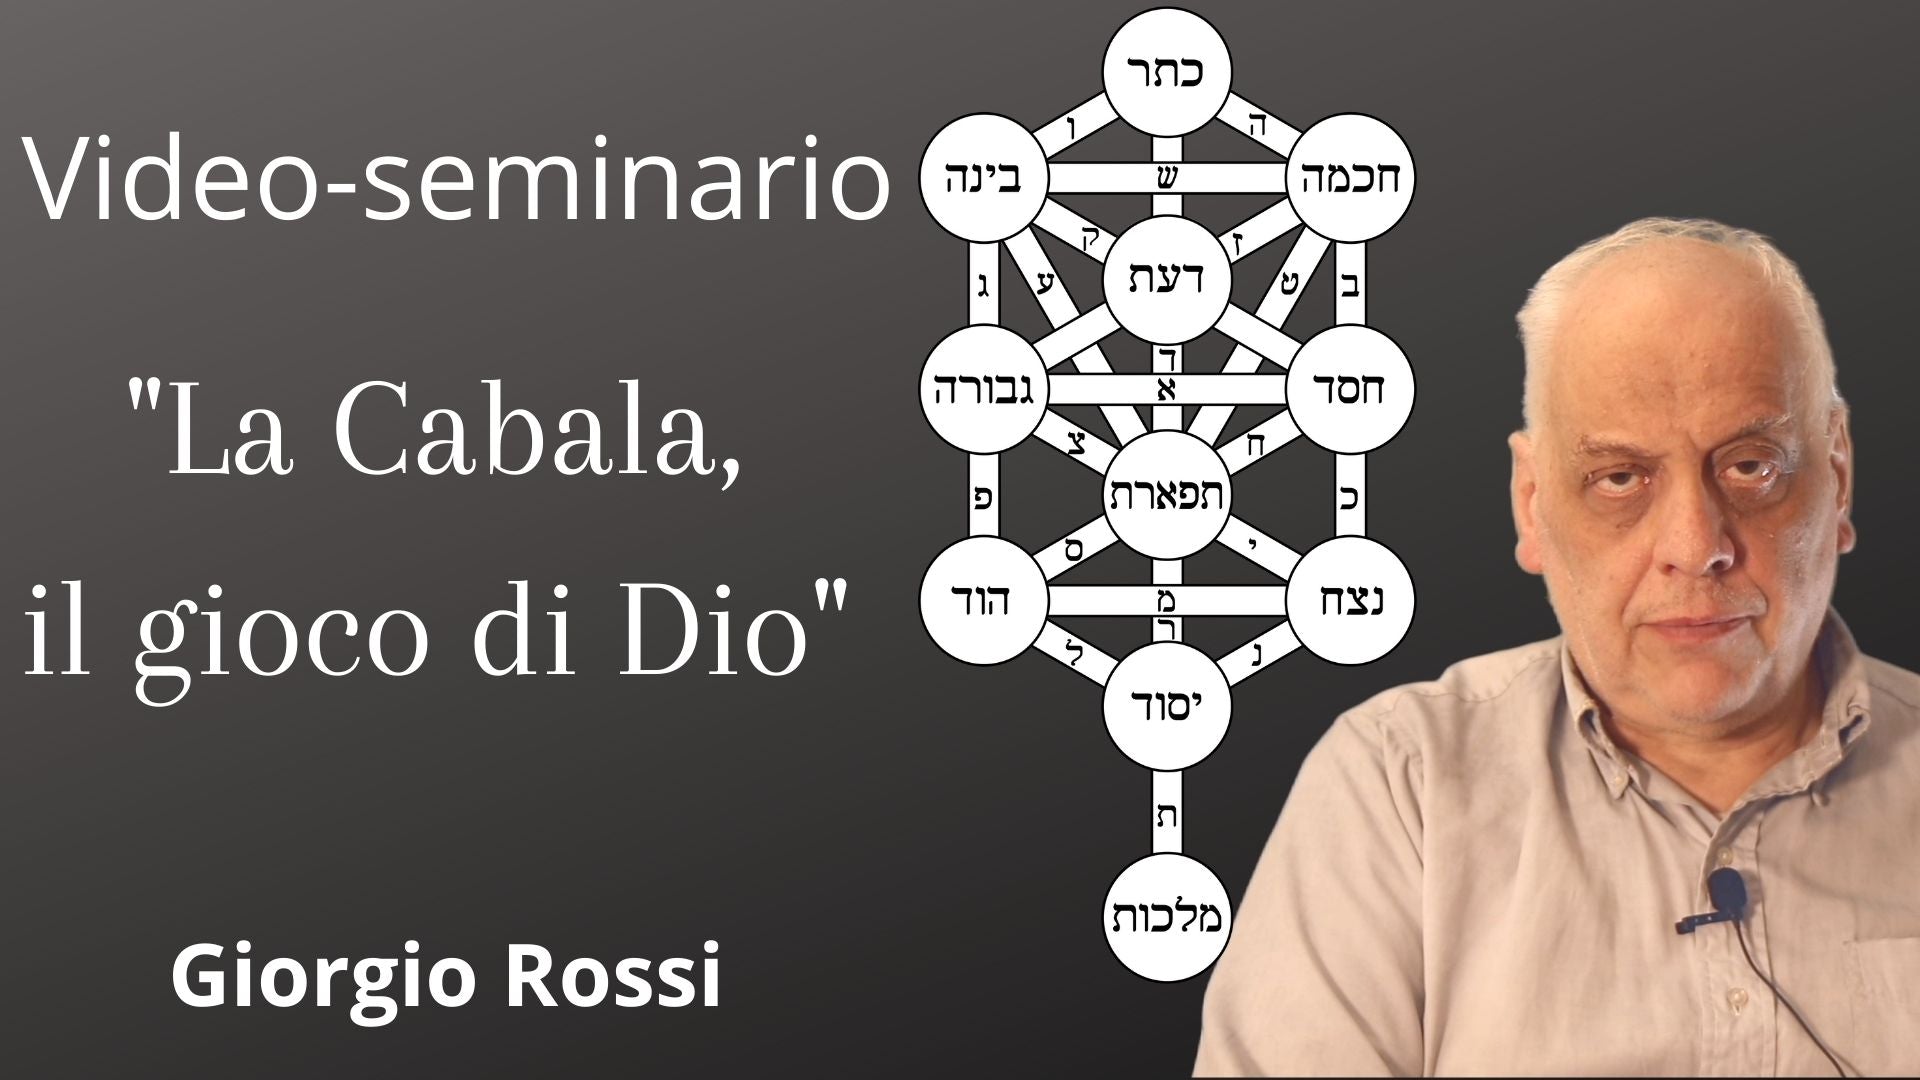 Video-seminario "La Cabala, il gioco di Dio" - Giorgio Rossi (scaricabile e visibile in streaming senza limite)